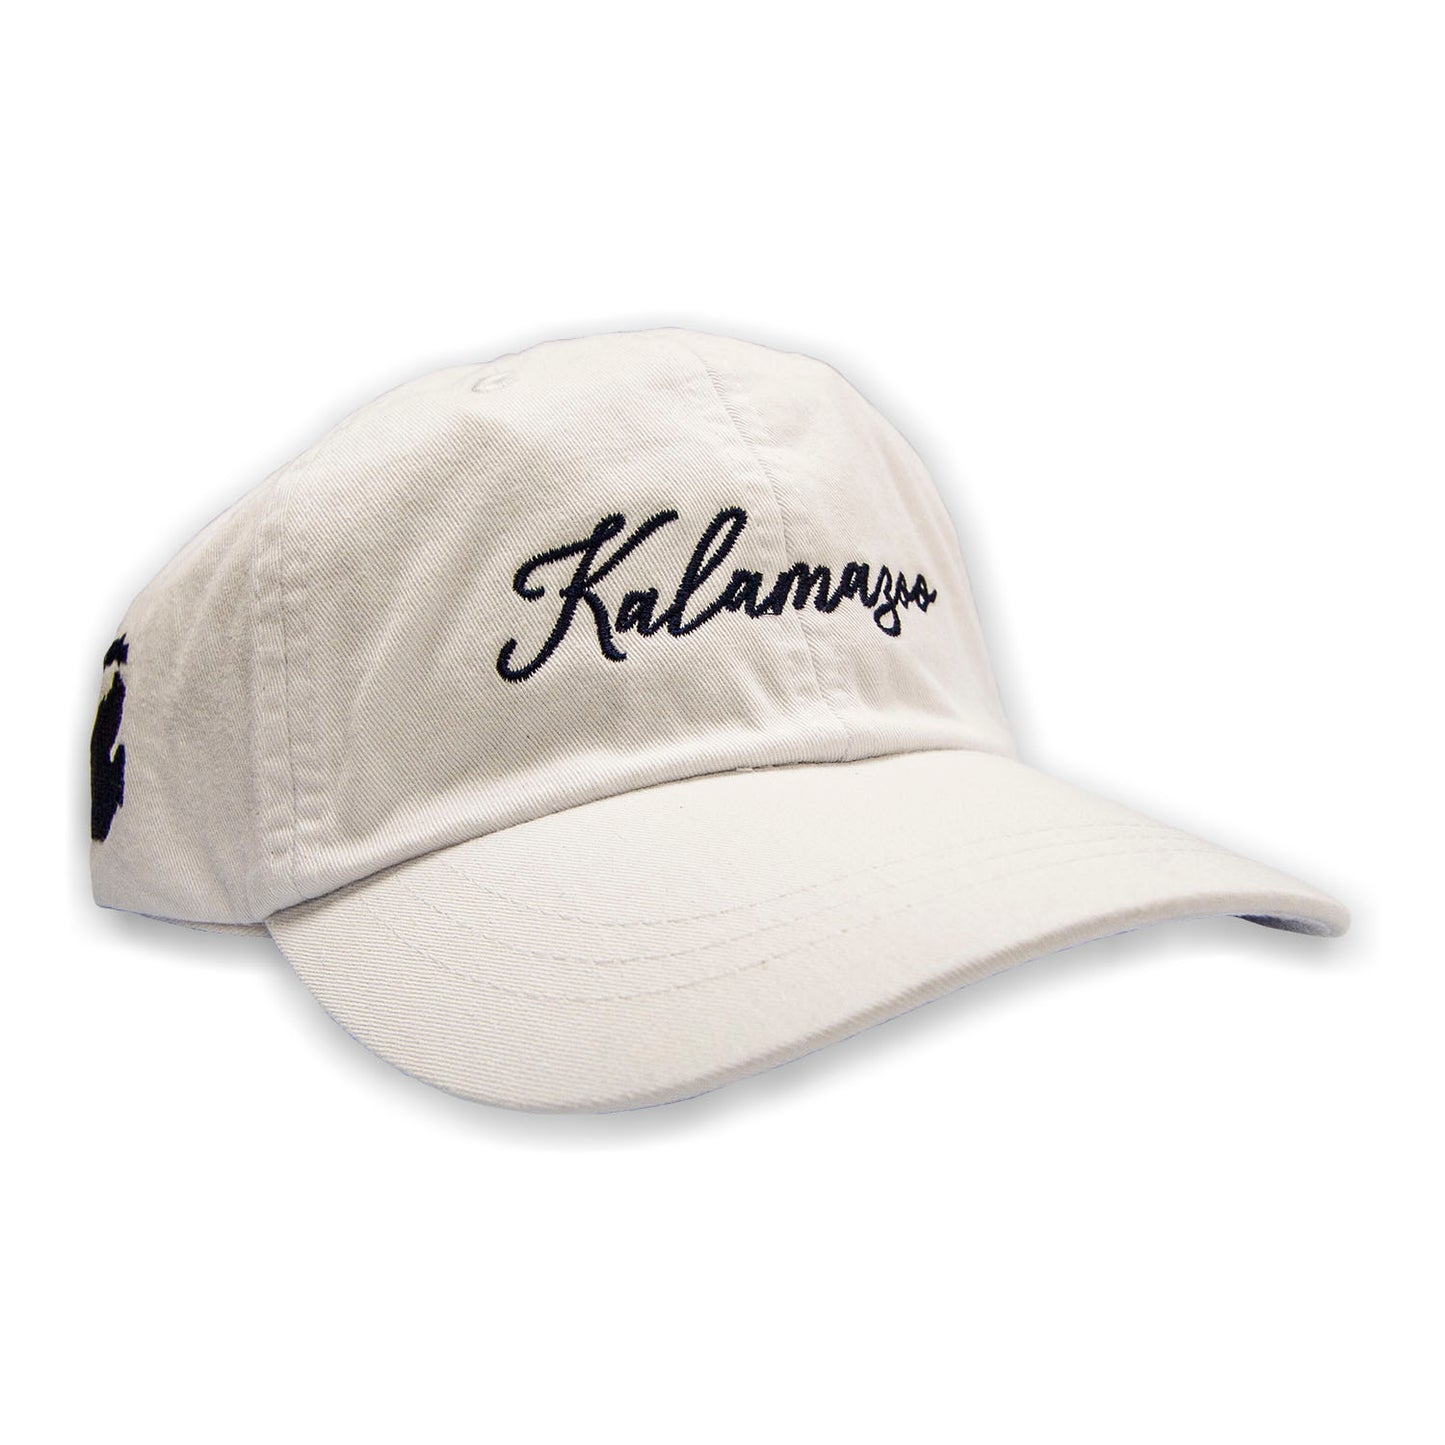 Kalamazoo Signature Cap